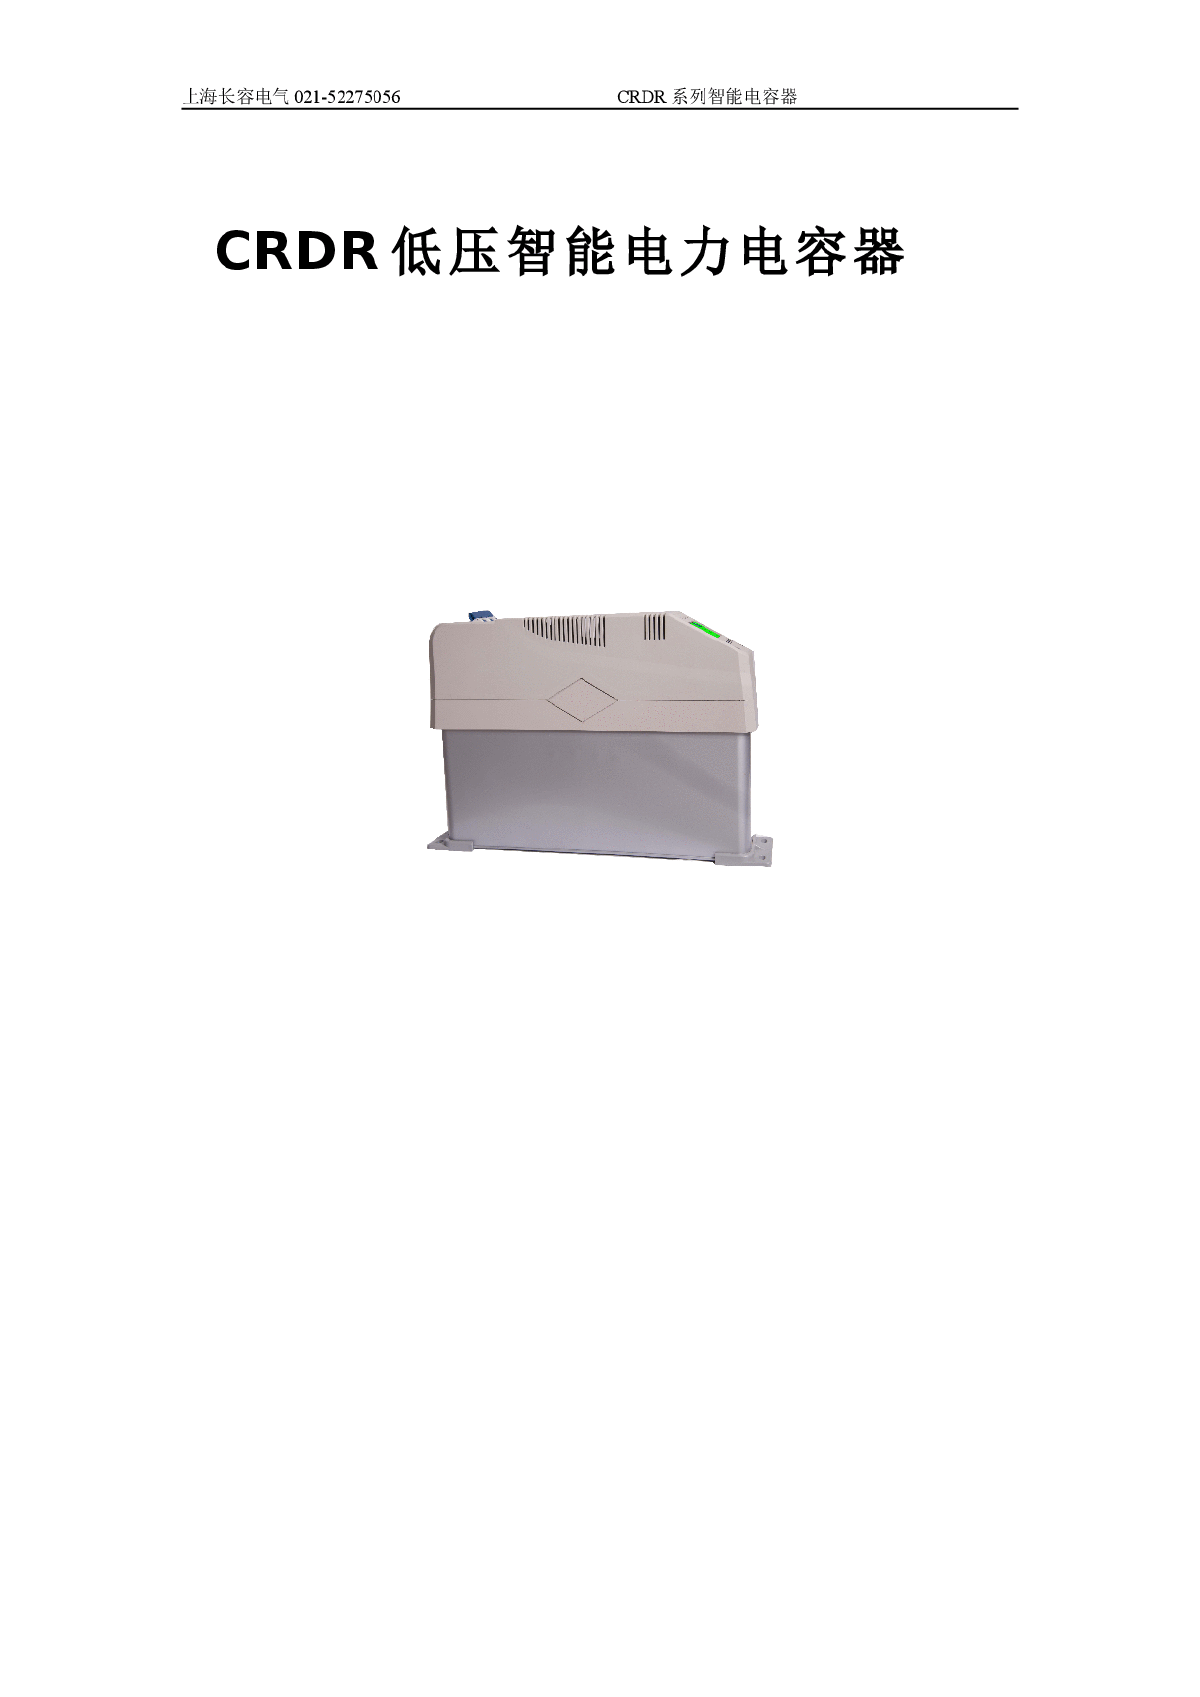 CRDR低压智能电力电容器